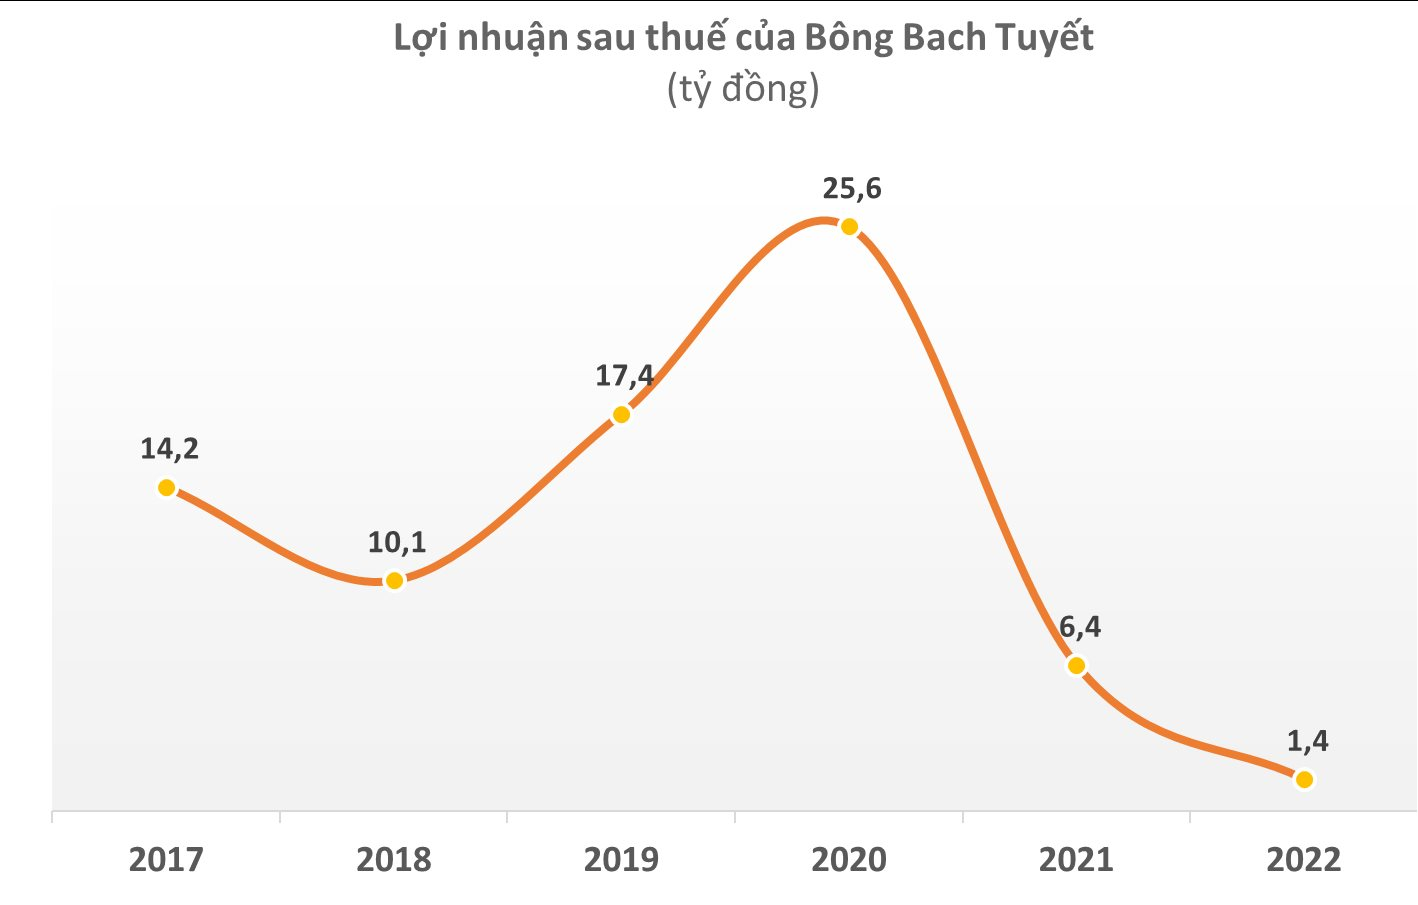 Bông Bạch Tuyết (BBT) bị xử phạt và truy thu thuế với số tiền gấp 4 lần lợi nhuận cả năm 2022 - Ảnh 1.